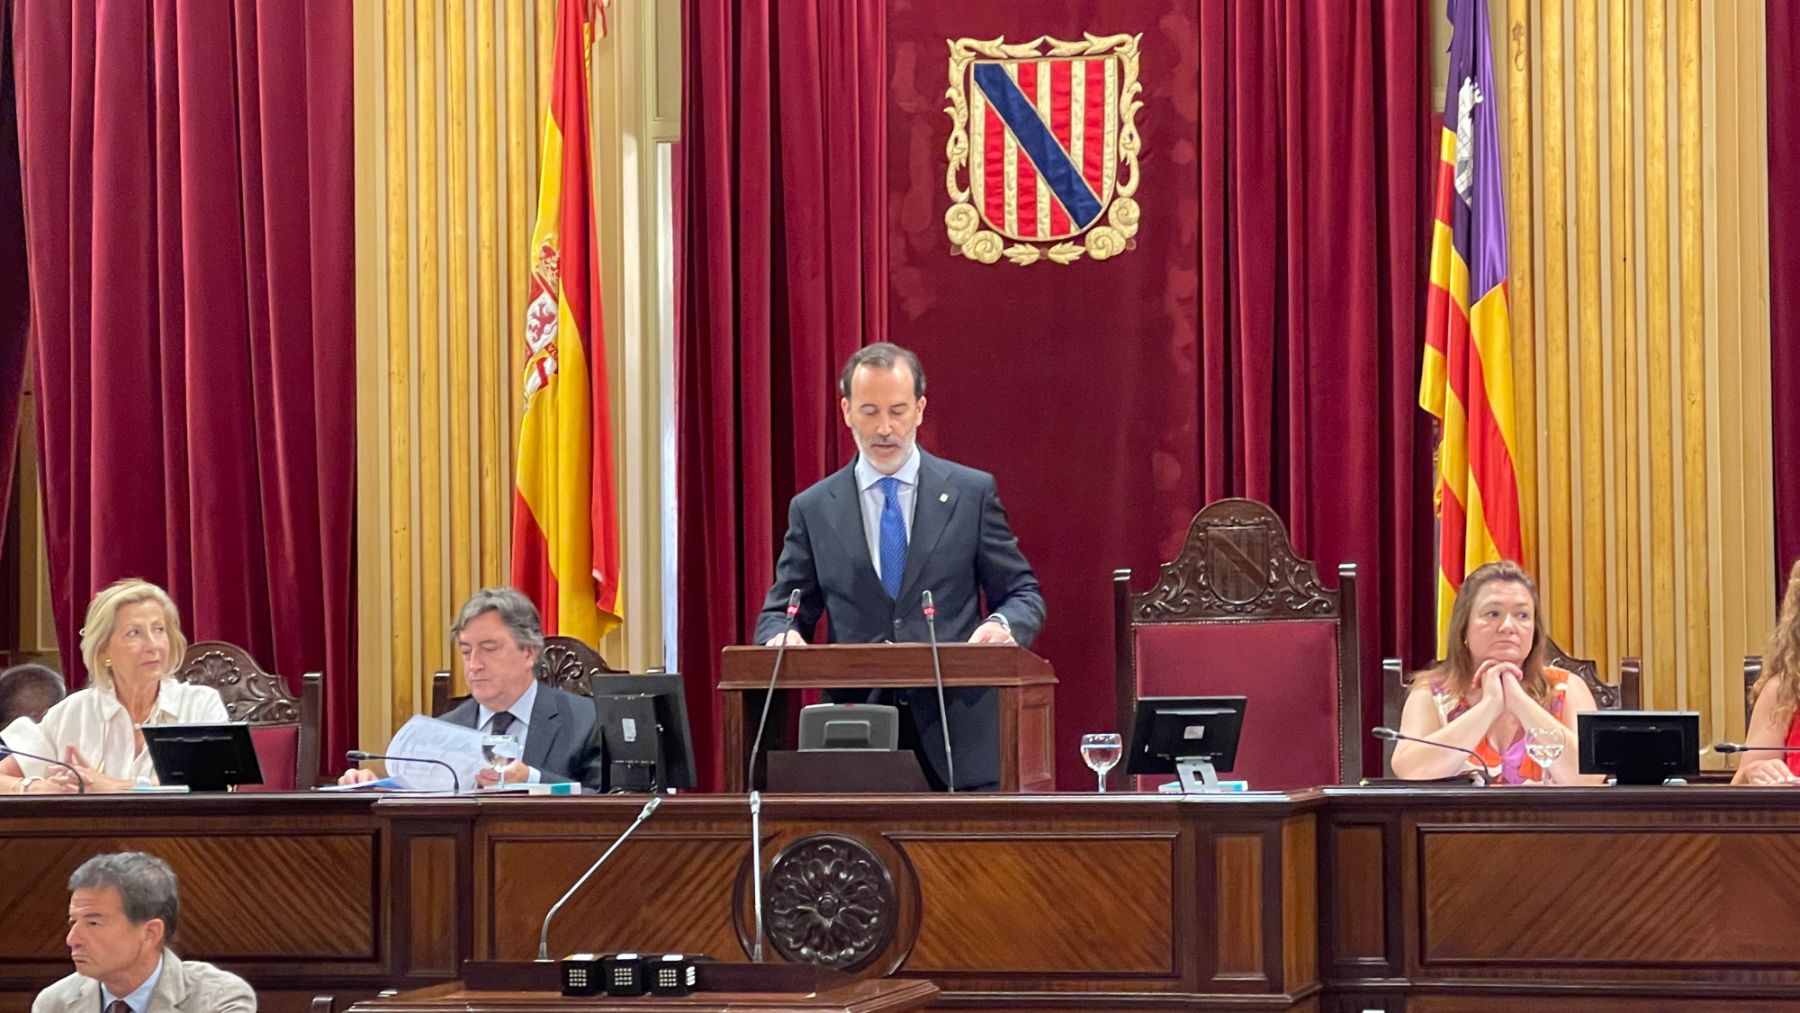 Le Senne (Vox) abre la legislatura en Baleares con un alegato a favor de la unidad de España